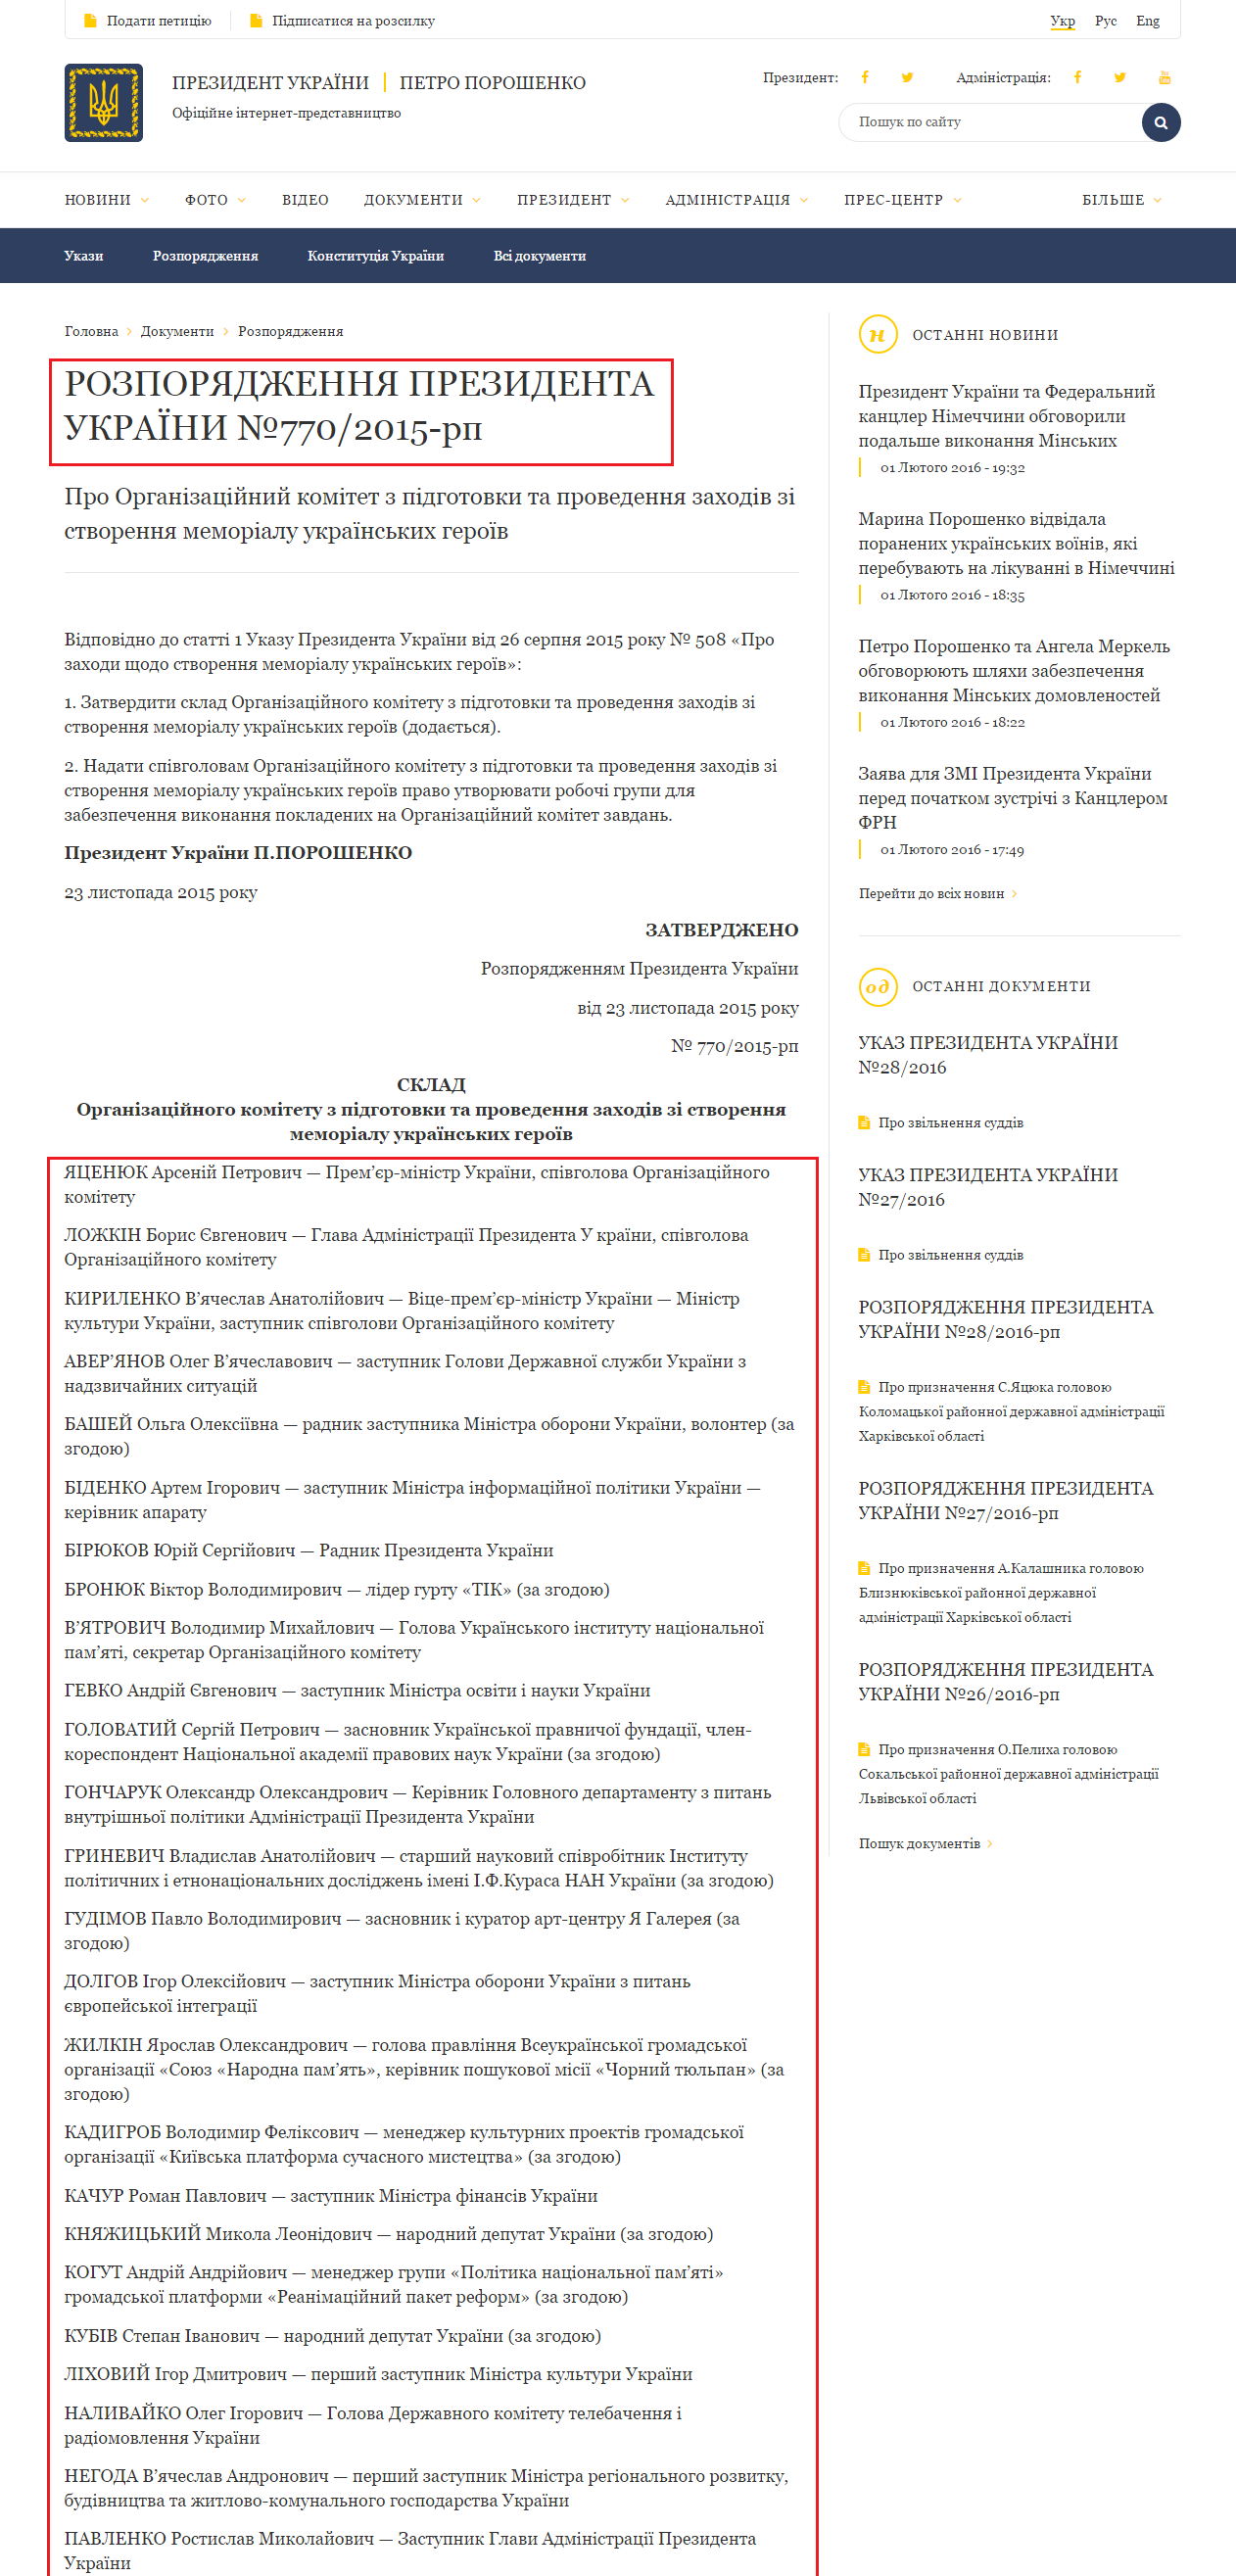 http://www.president.gov.ua/documents/7702015-rp-19573